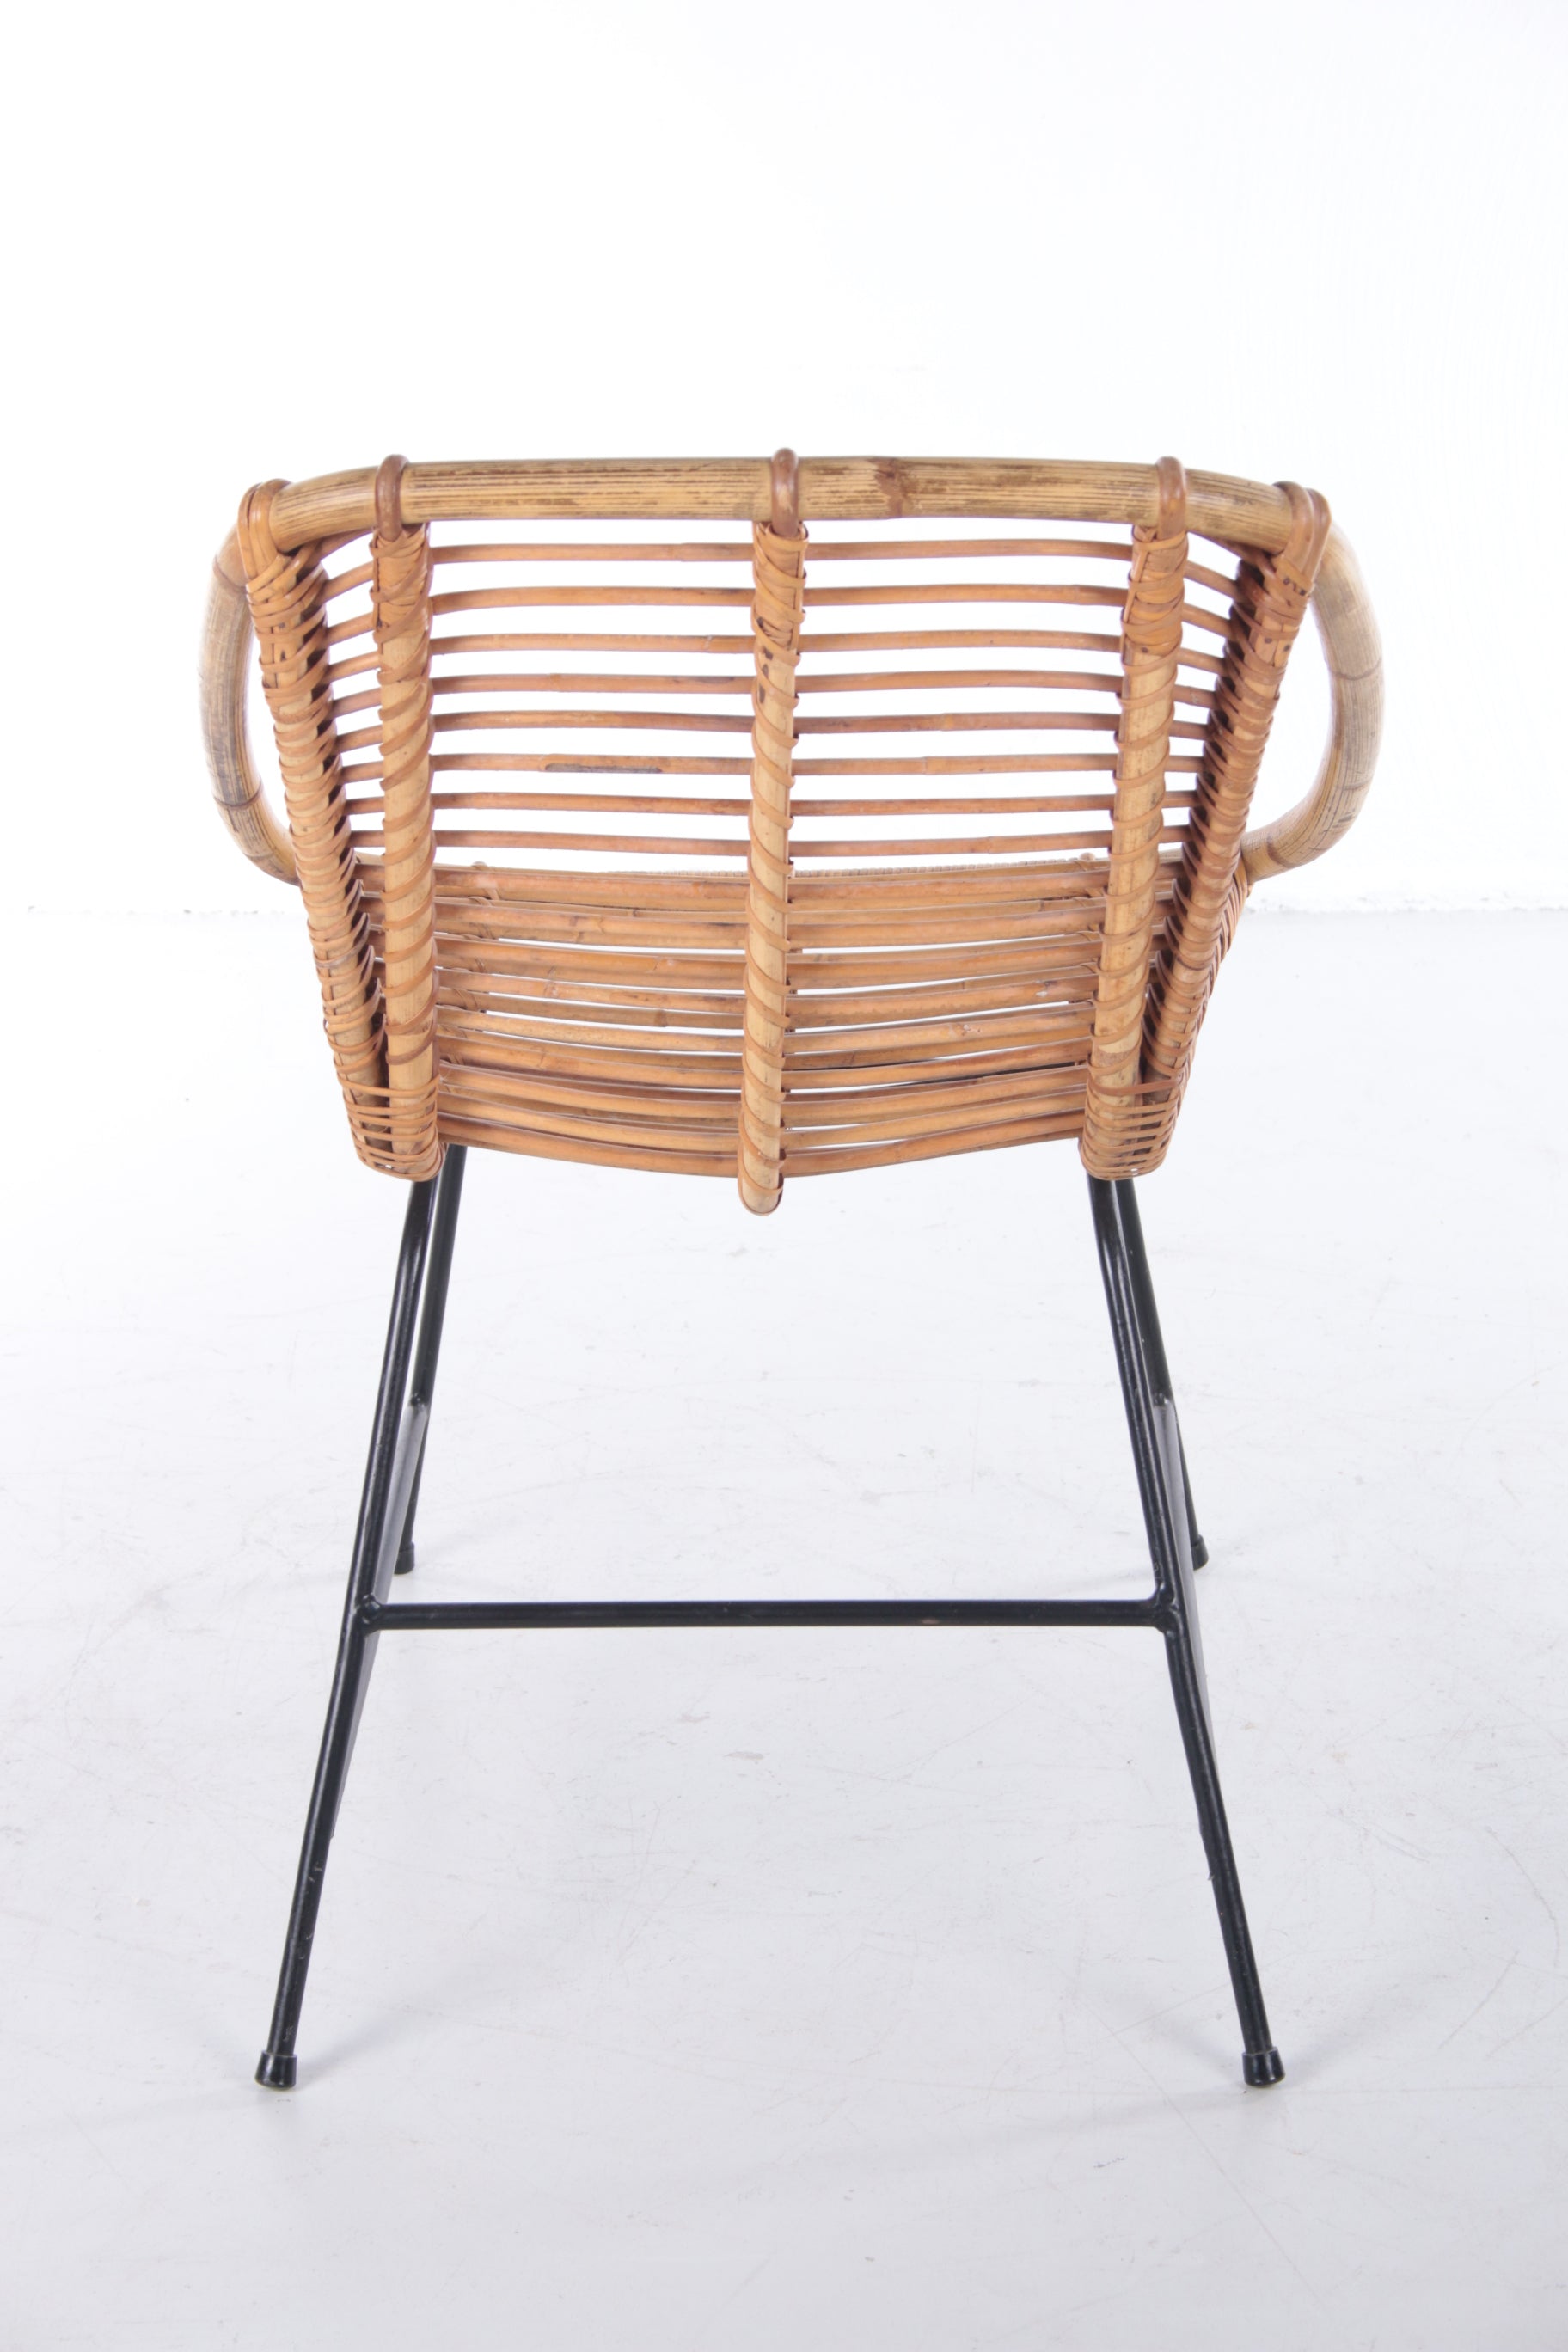 Vintage Bamboe Design stoel jaren60 Dirk van Sliedrecht Style.Set van 4 achterkant